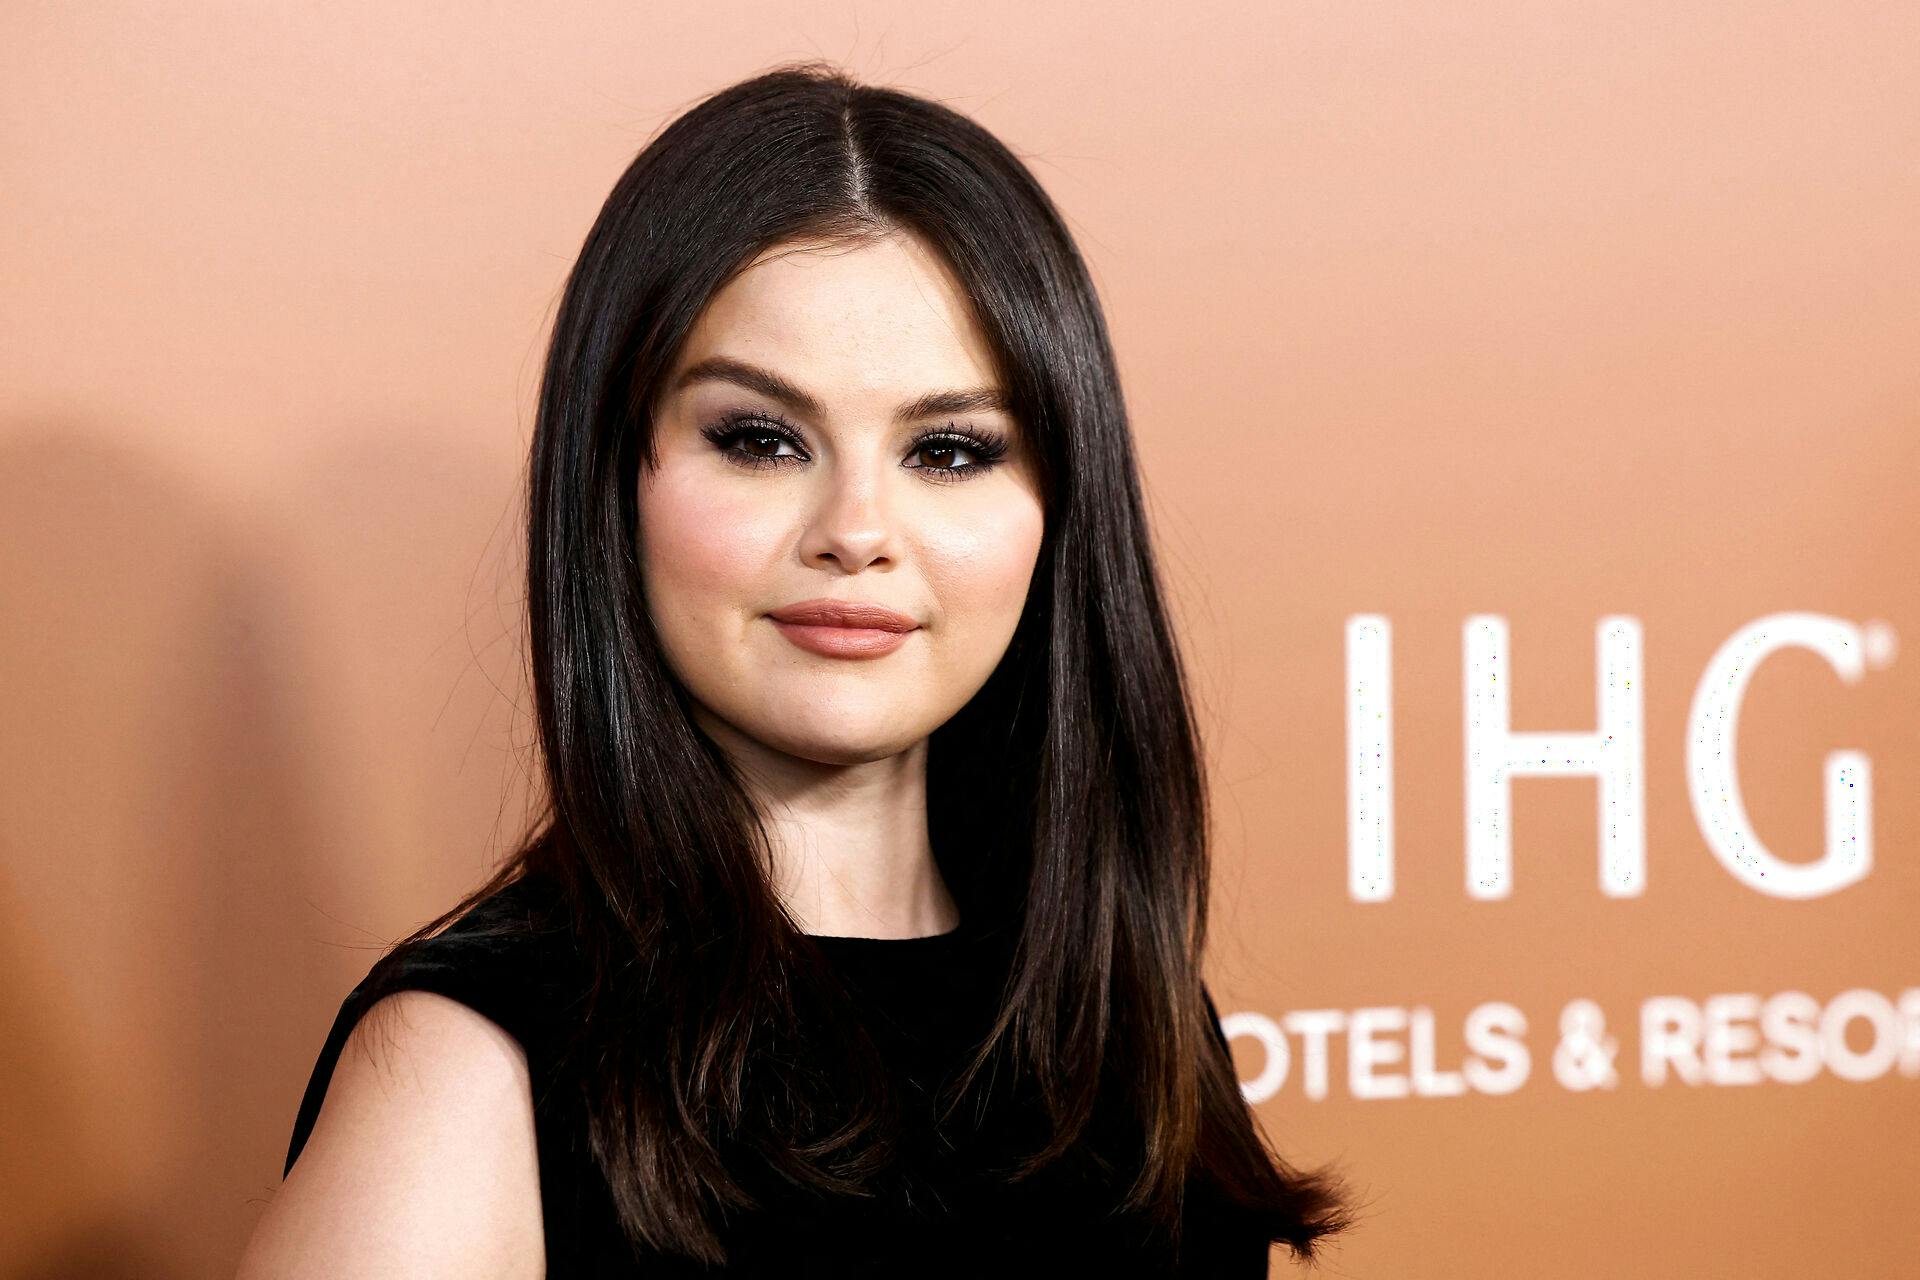 Selena Gomez var nok noget mere tilfreds med, hvordan hun så ud til dette års "Variety Hitmakers" i Los Angeles, end da hun i 2018 dukkede op til Met Gala.